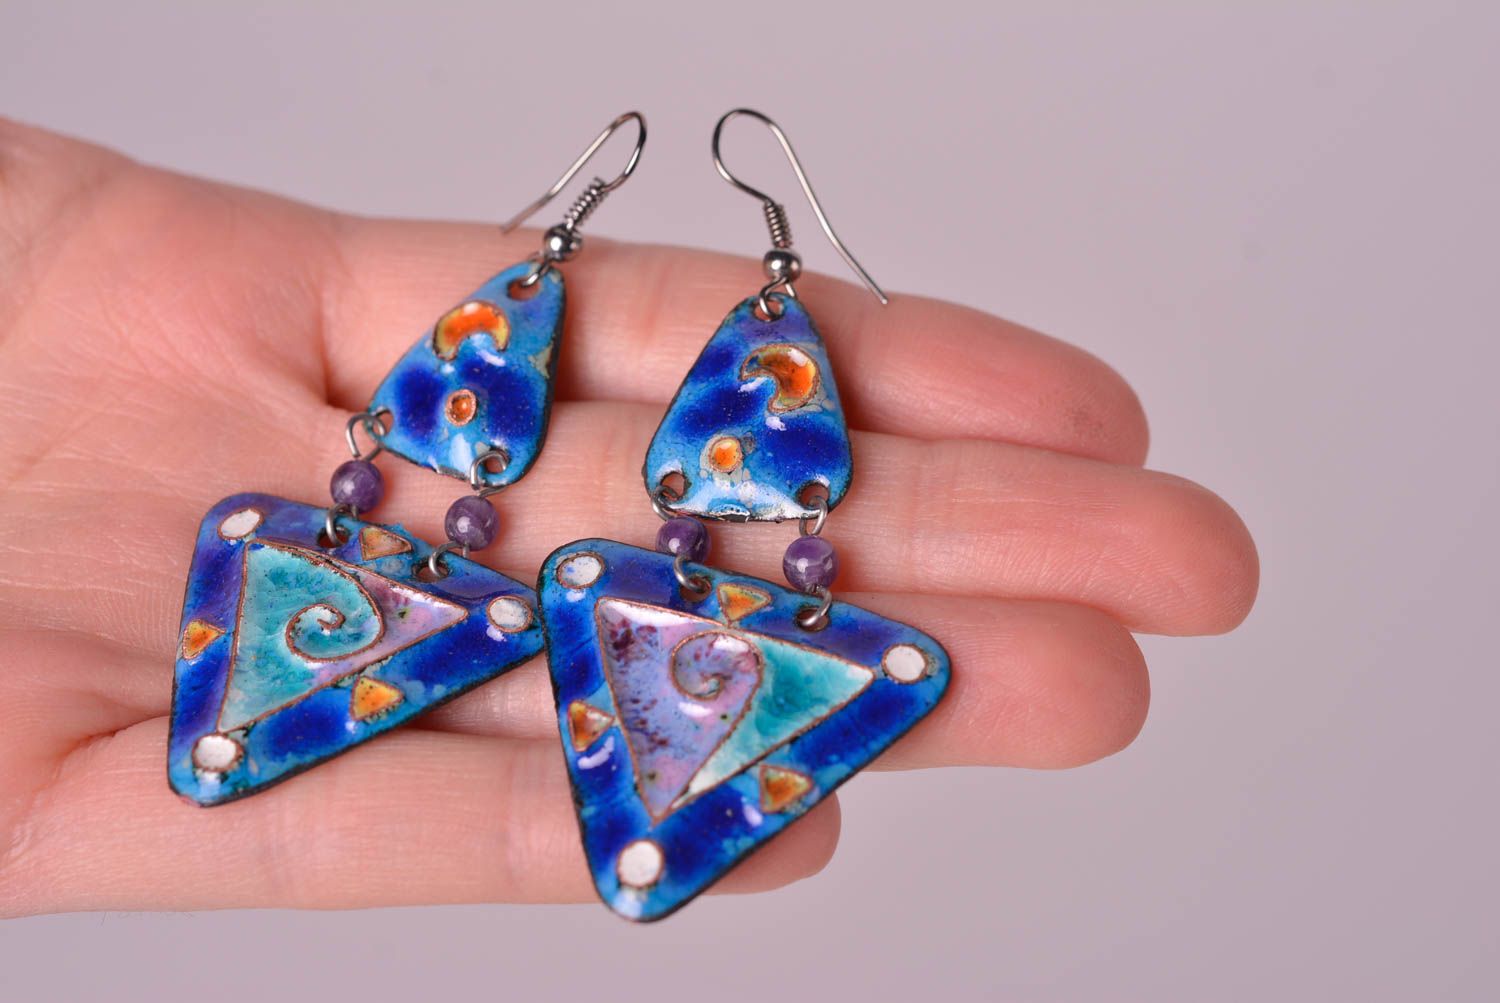 Unusual handmade metal earrings costume jewelry designs metal craft gift ideas  photo 2